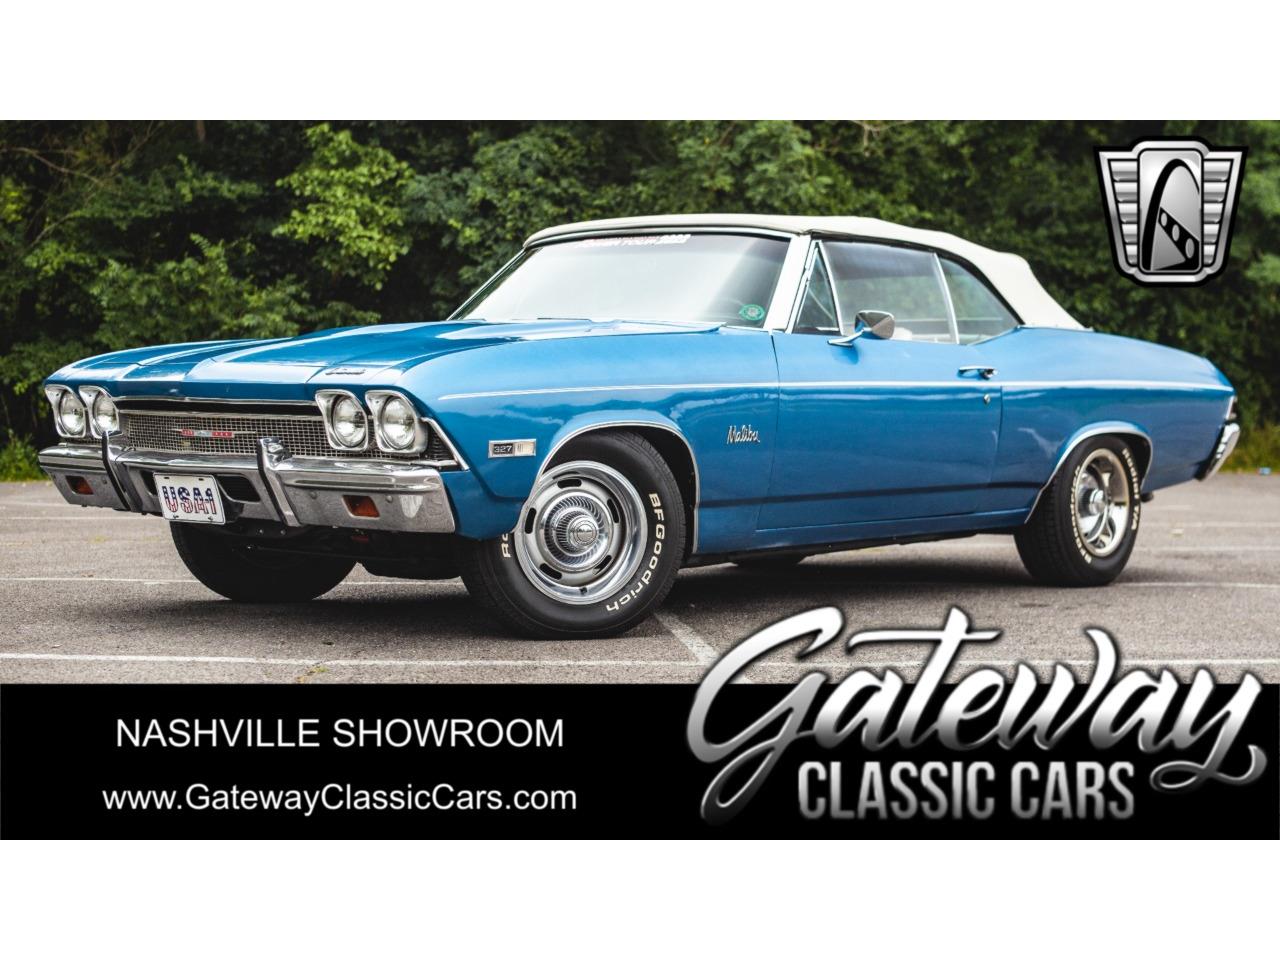 For Sale: 1968 Chevrolet Chevelle in O'Fallon, Illinois for sale in O Fallon, IL